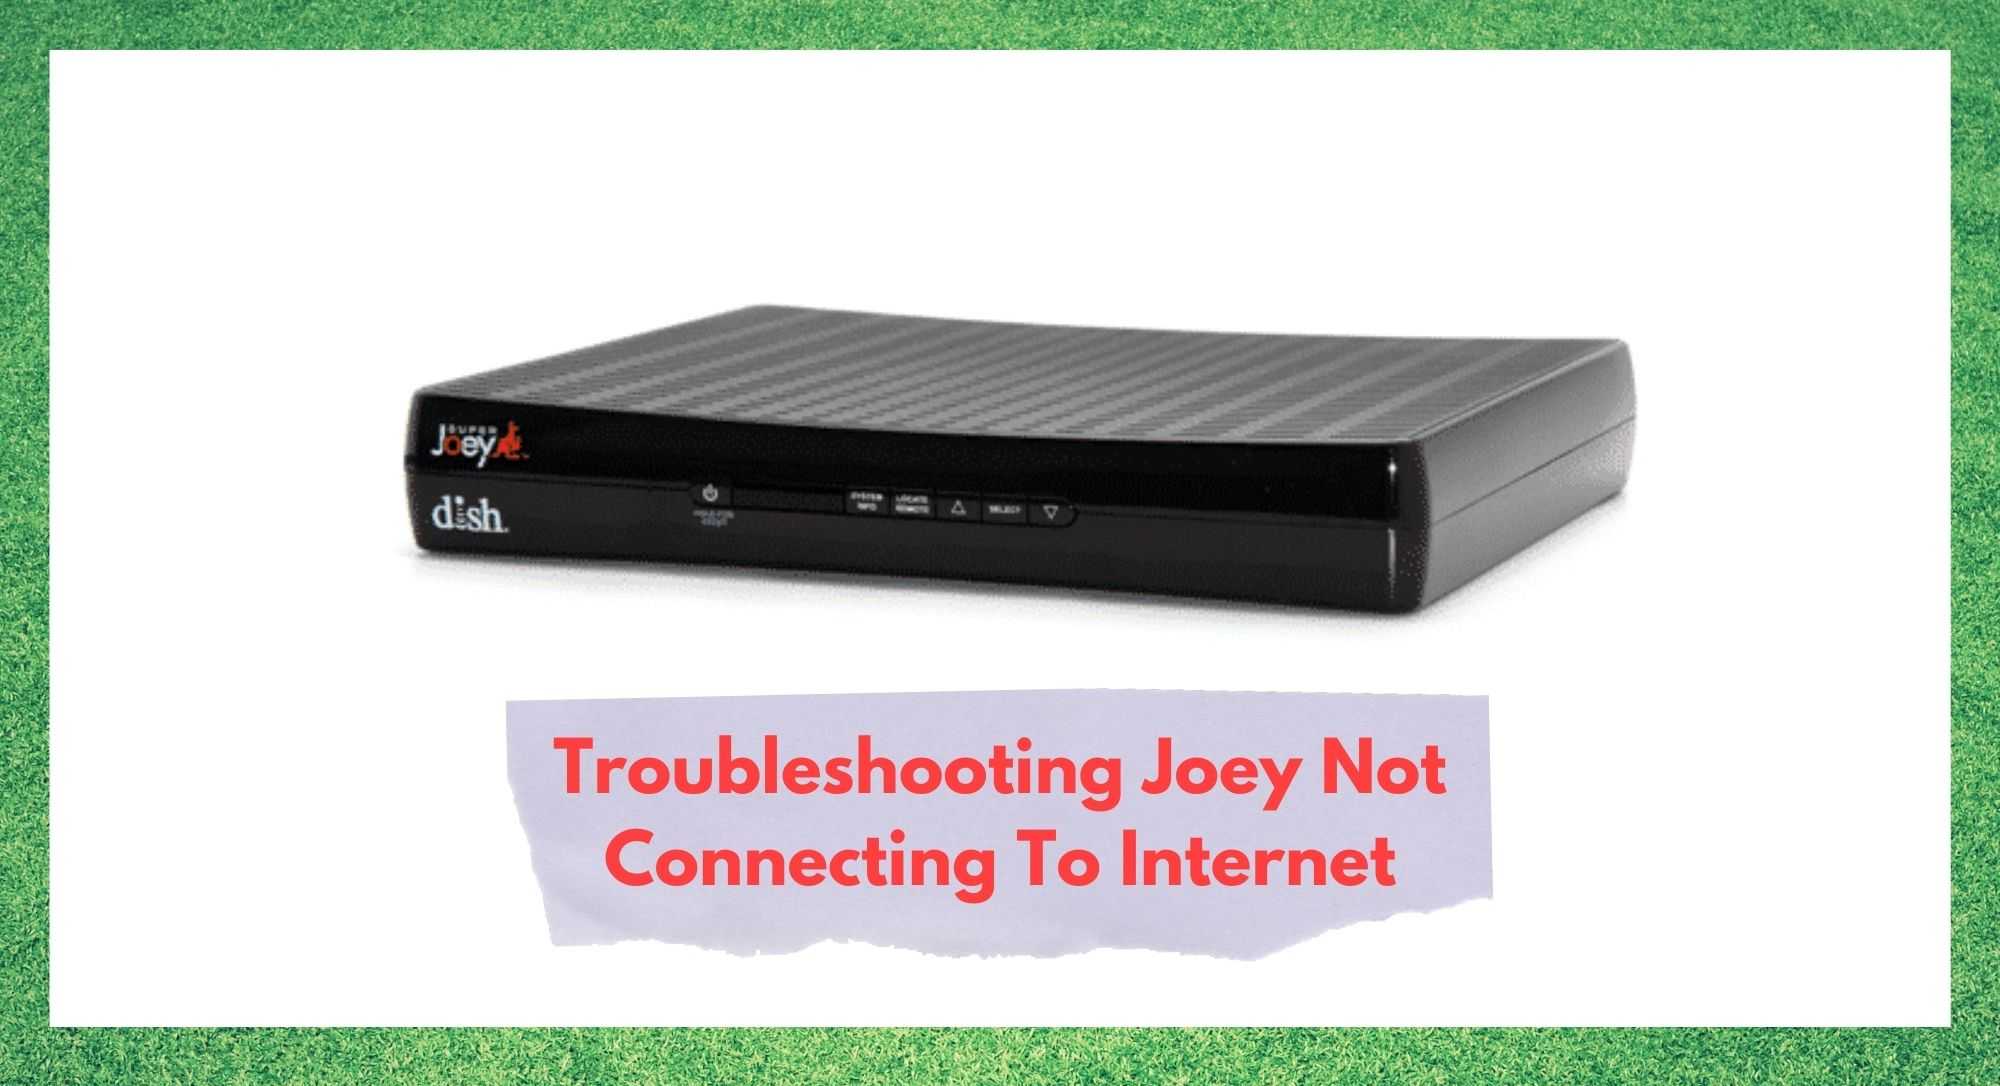 Joey maakt geen verbinding met internet: 6 manieren om dit op te lossen